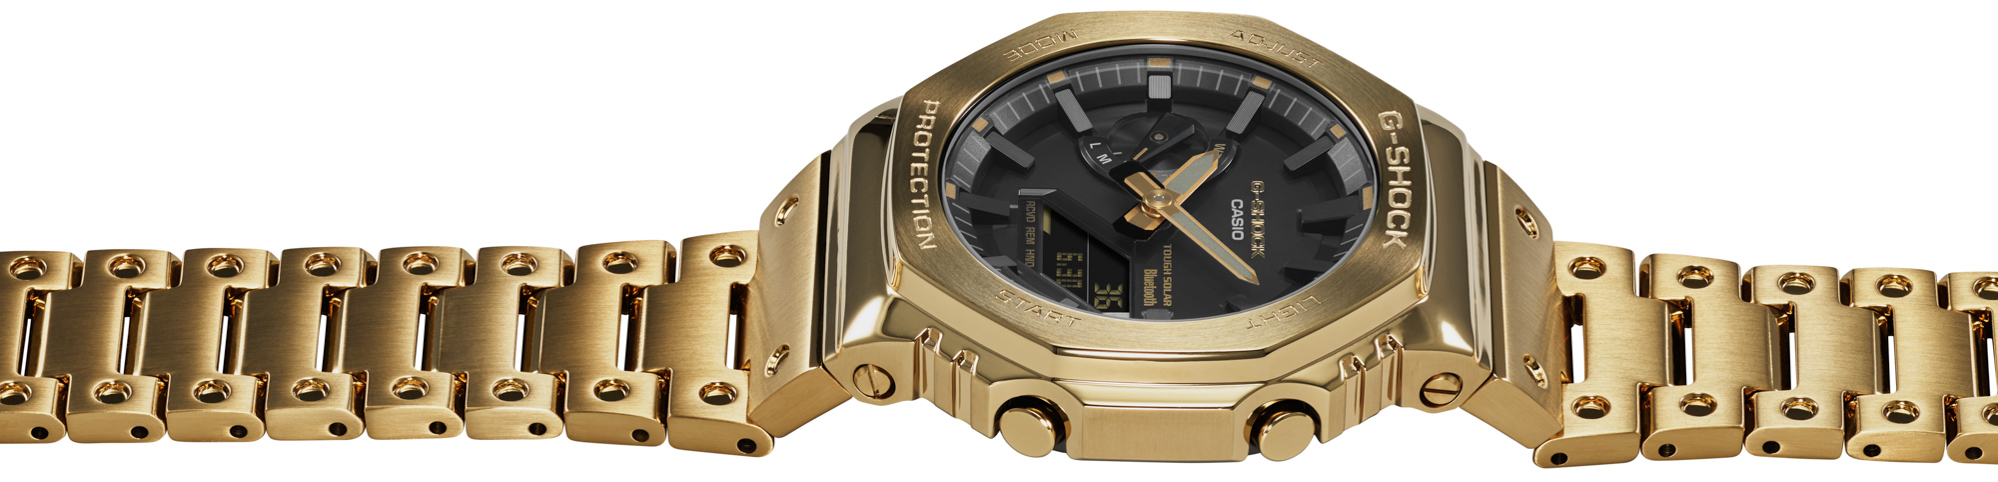 Первый взгляд: G-Shock расширяет свою полностью золотую линию часами CASIO GMB2100GD-9A